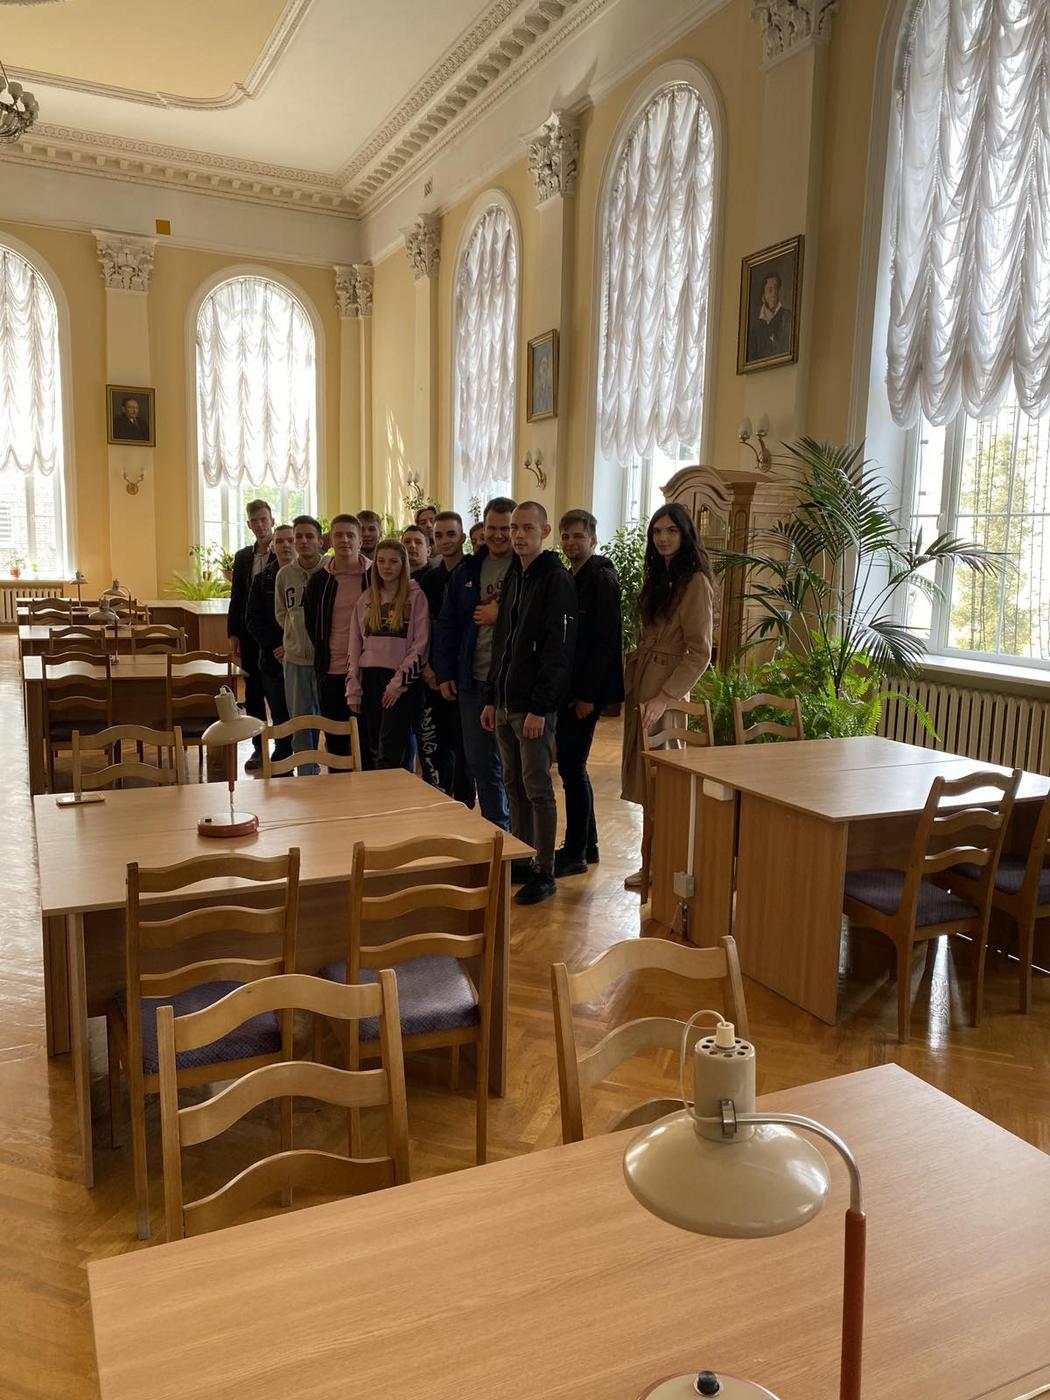 Свой учебный год студенты машиностроительного факультета начали с регистрации в Гомельской областной универсальной библиотеки имени Ленина